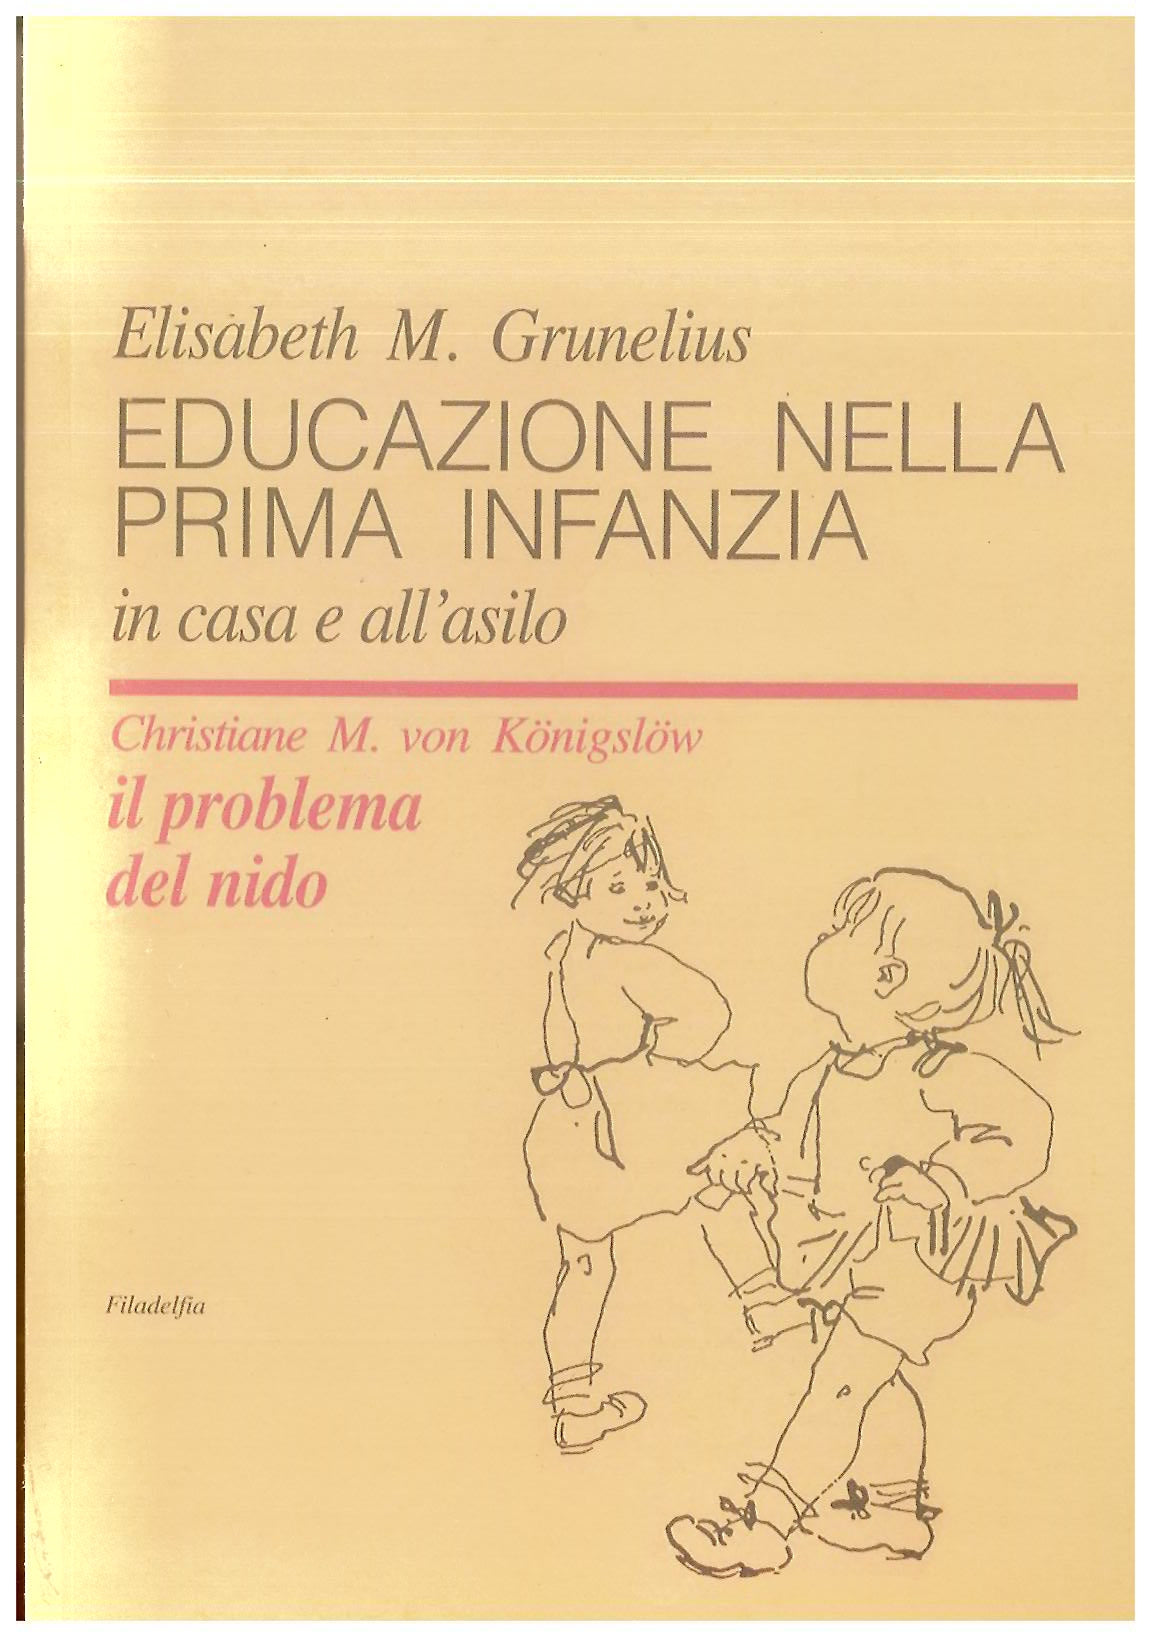 Educazione nella prima infanzia - Grunelius E.M.